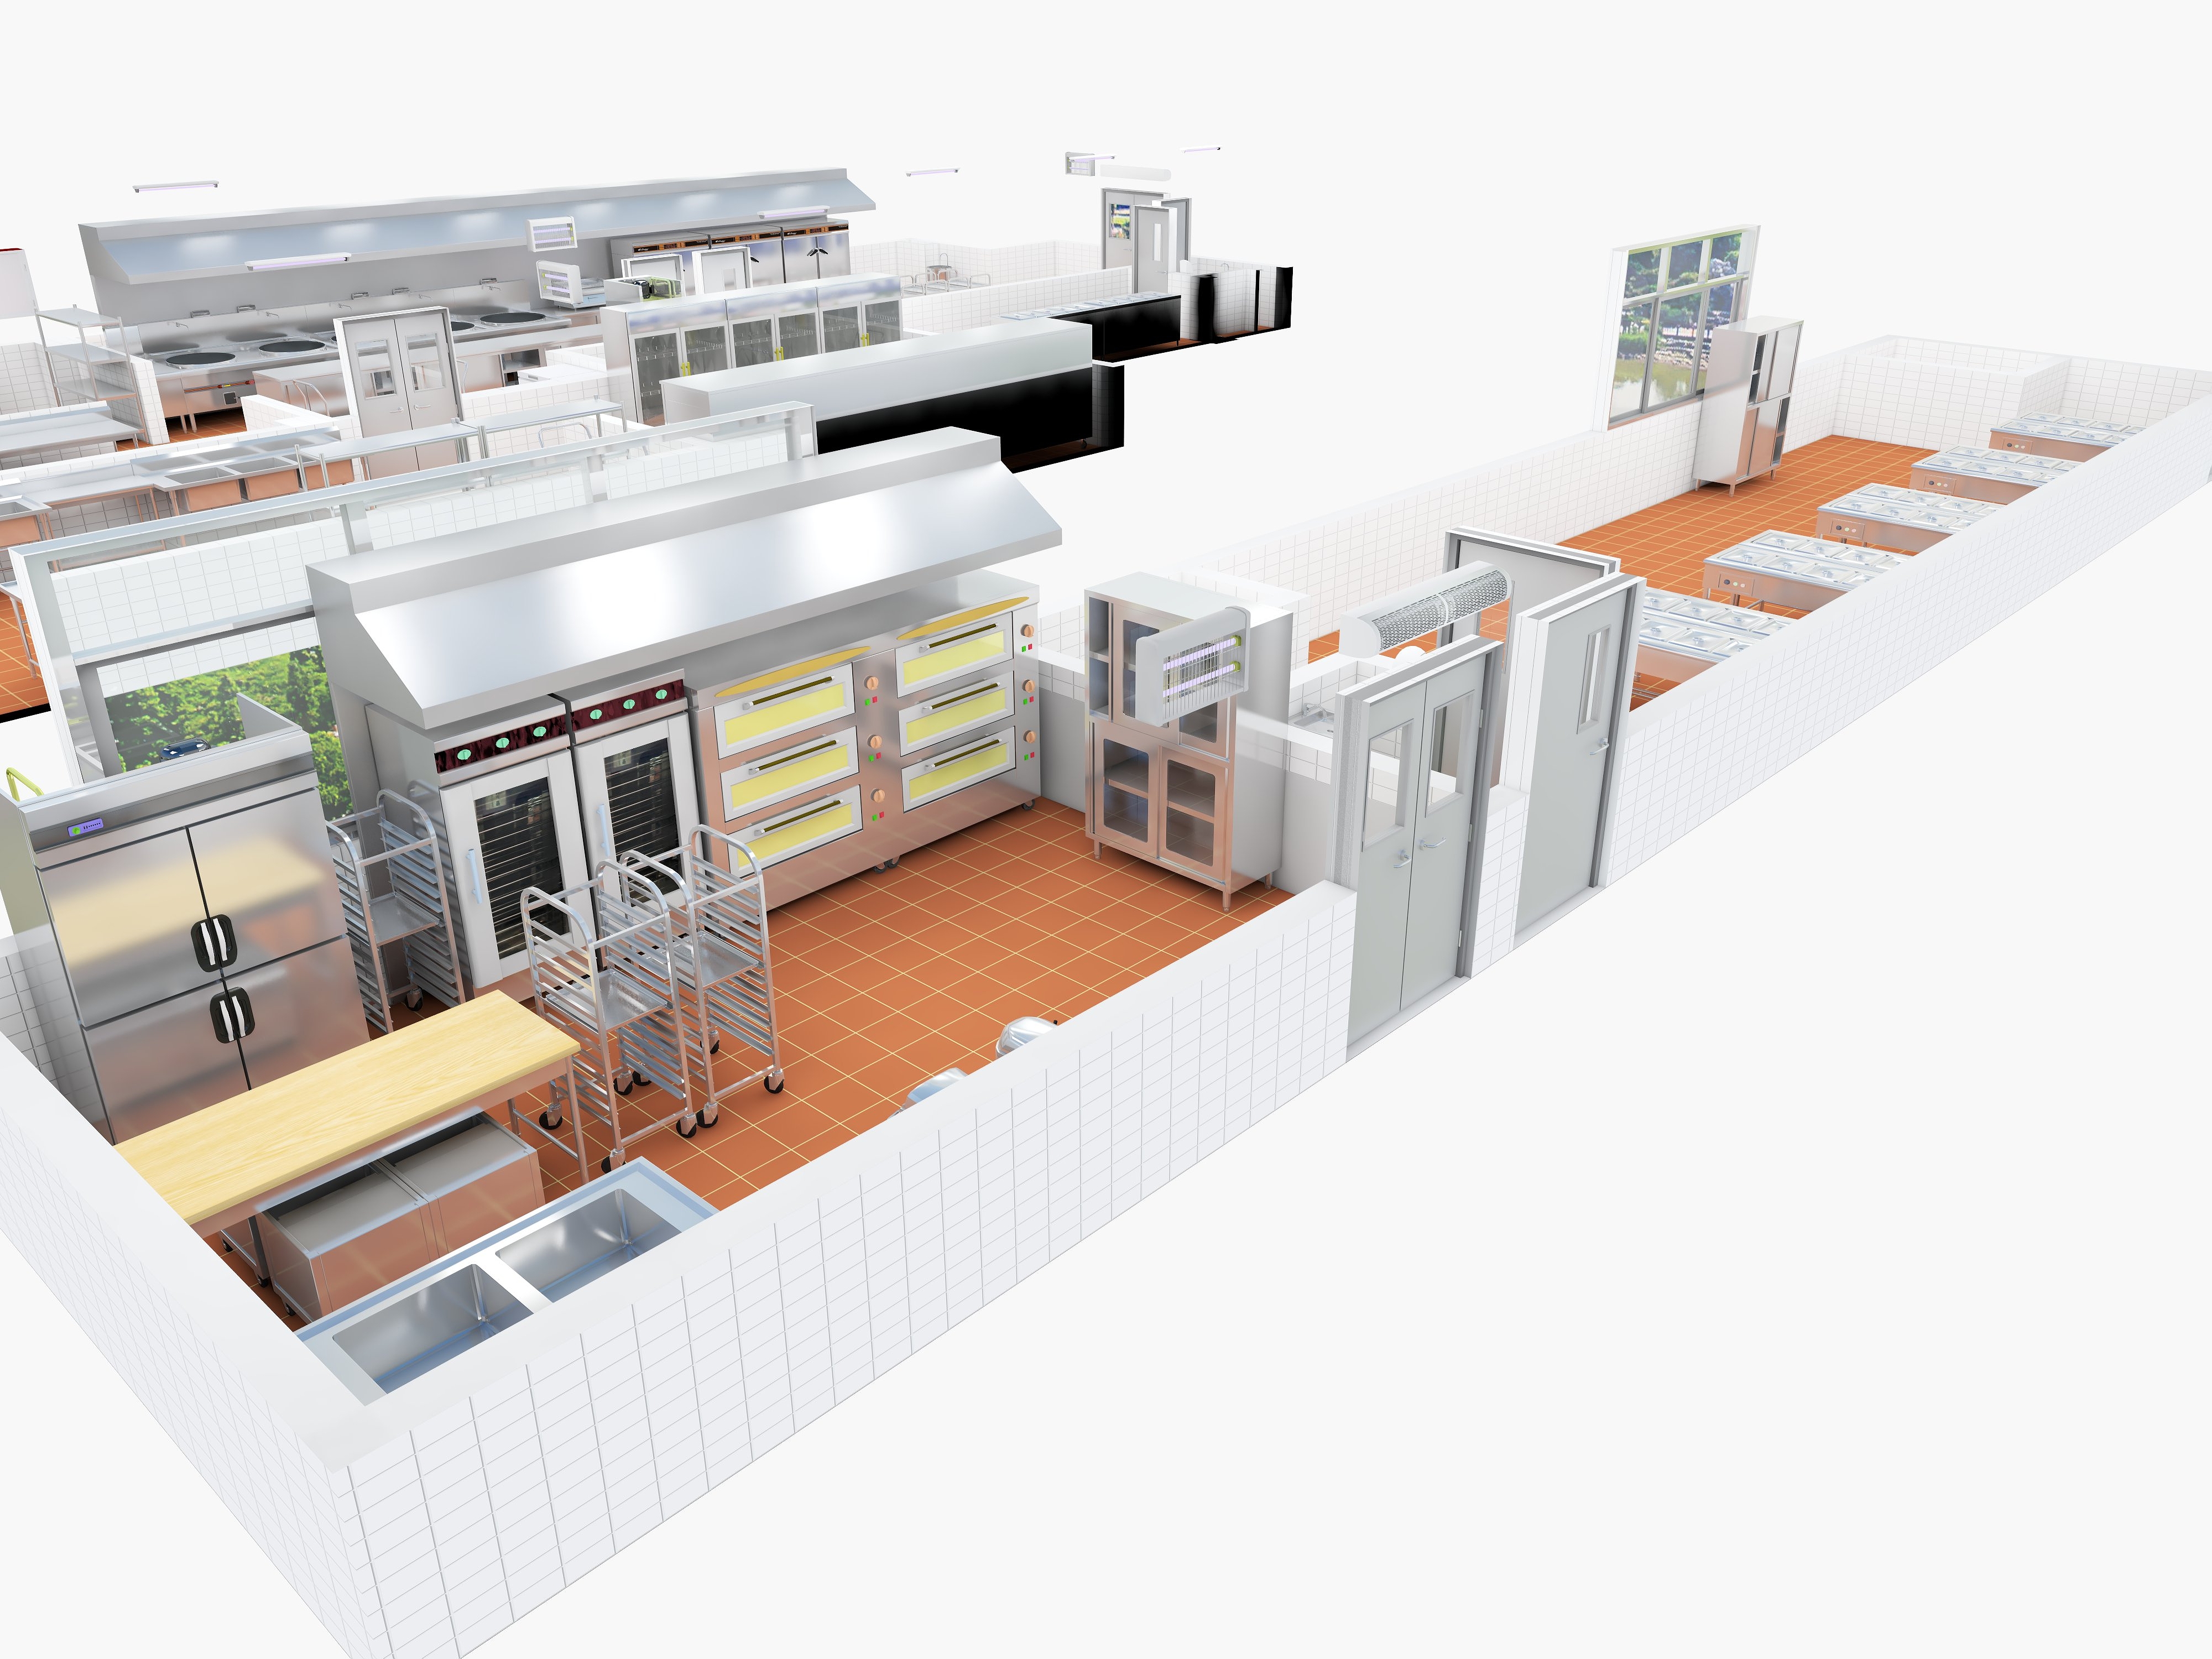 Design de cozinha comercial: melhorando a eficiência e reduzindo custos, otimizando o armazenamento